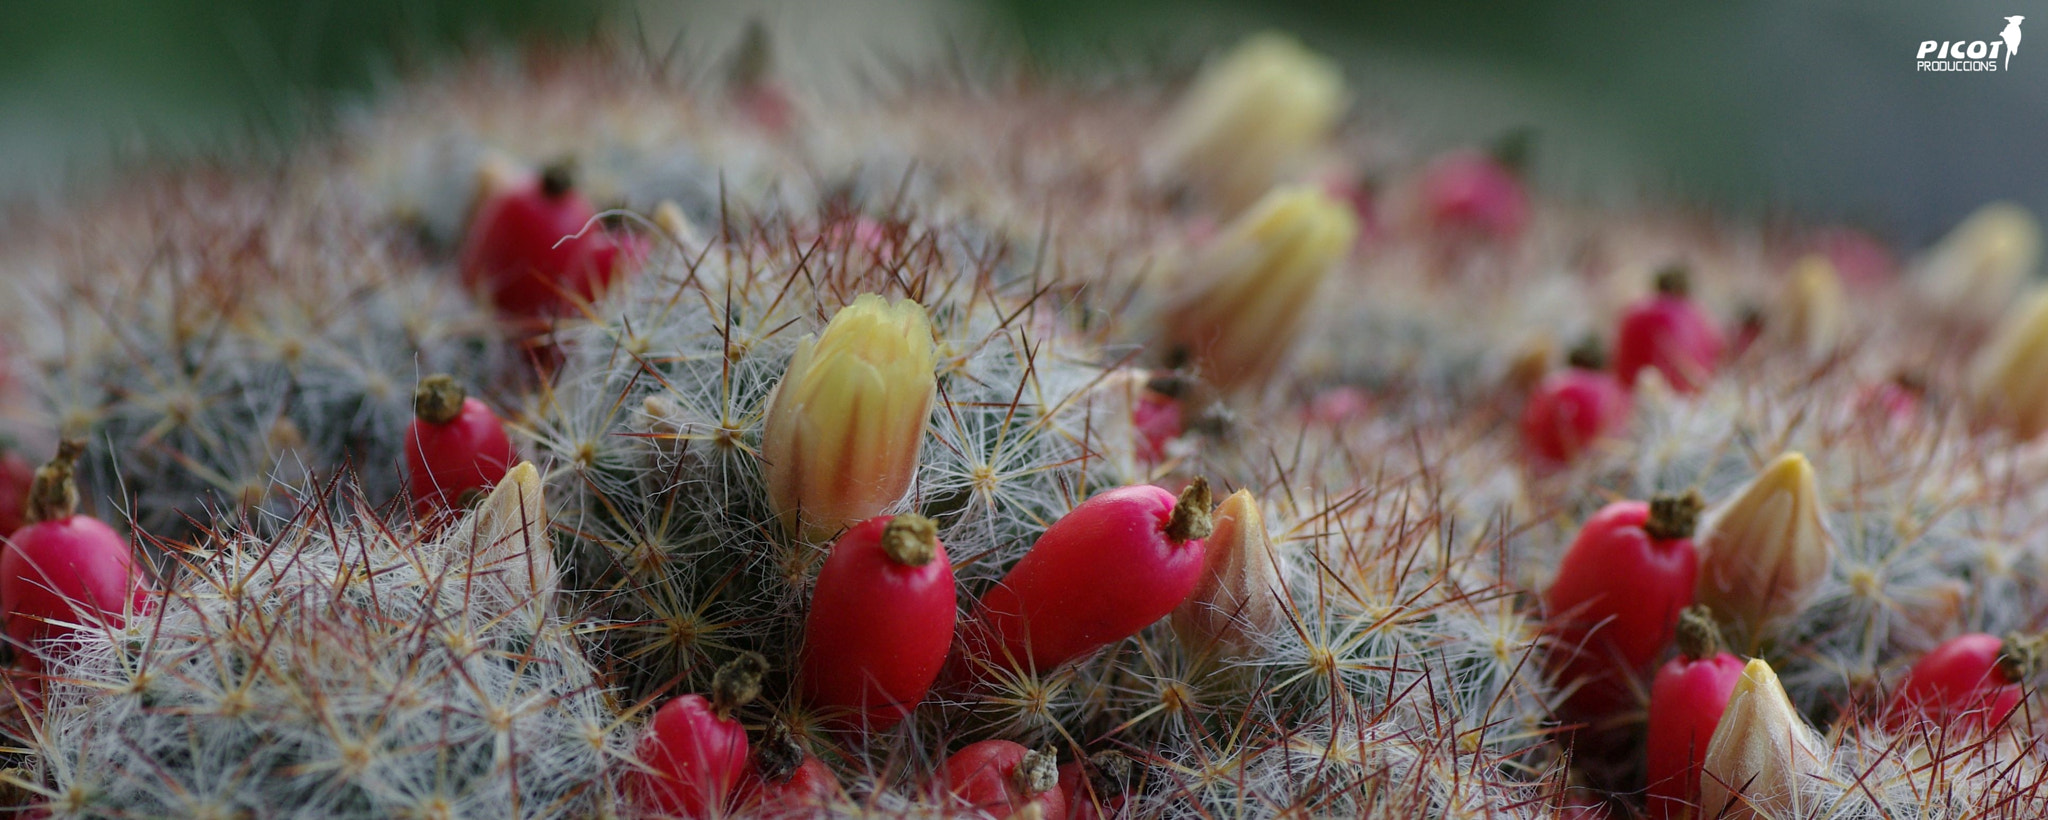 Pentax K10D sample photo. Cactus photography